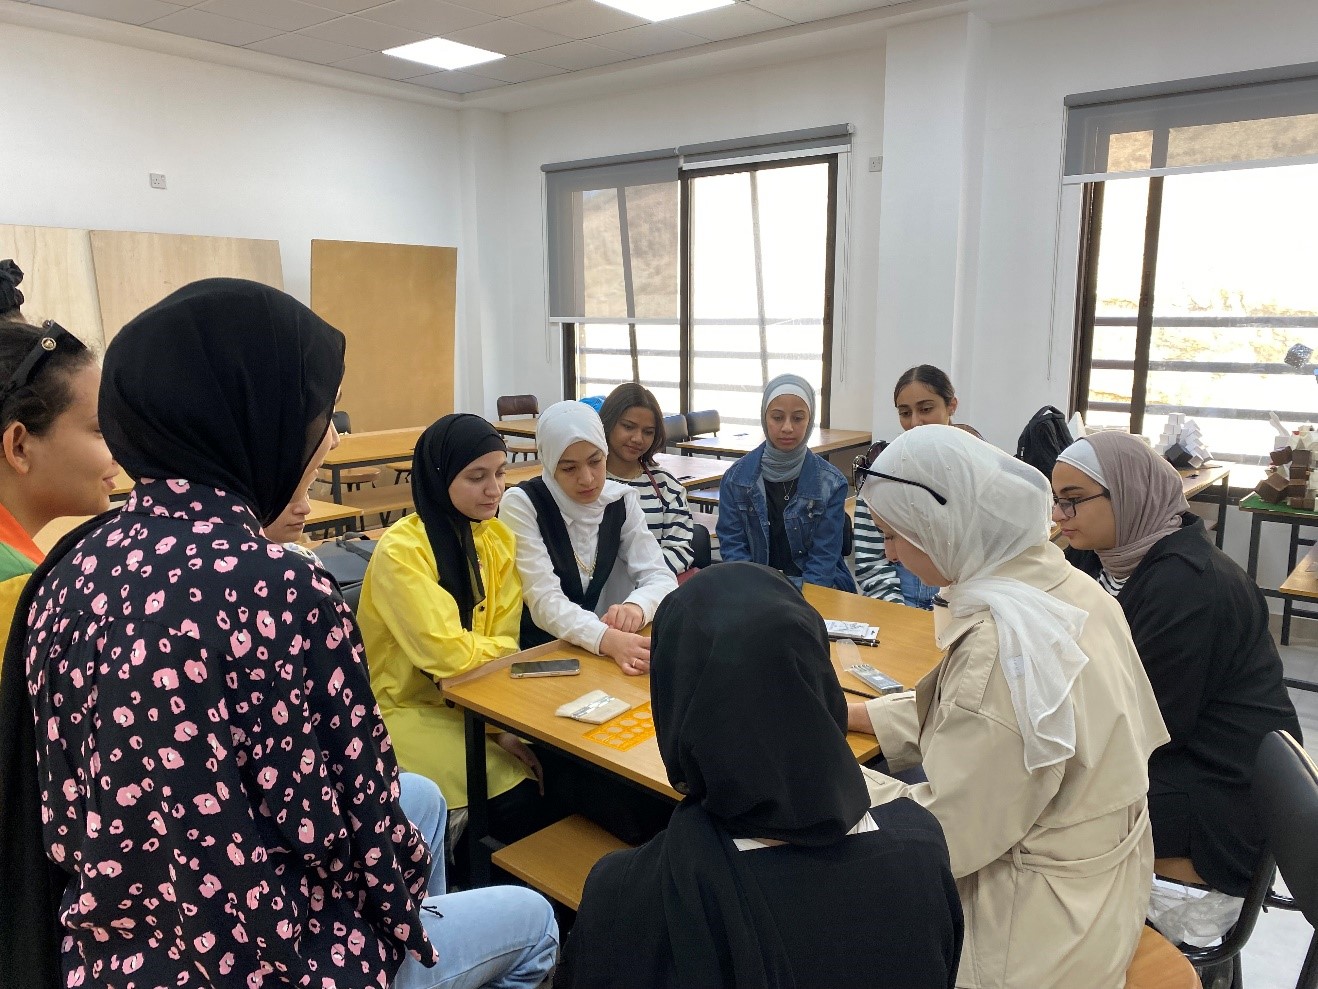 دورة تدريبية حول "الرسم والاظهار المعماري باستخدام الالوان المائية" في عمان العربية1